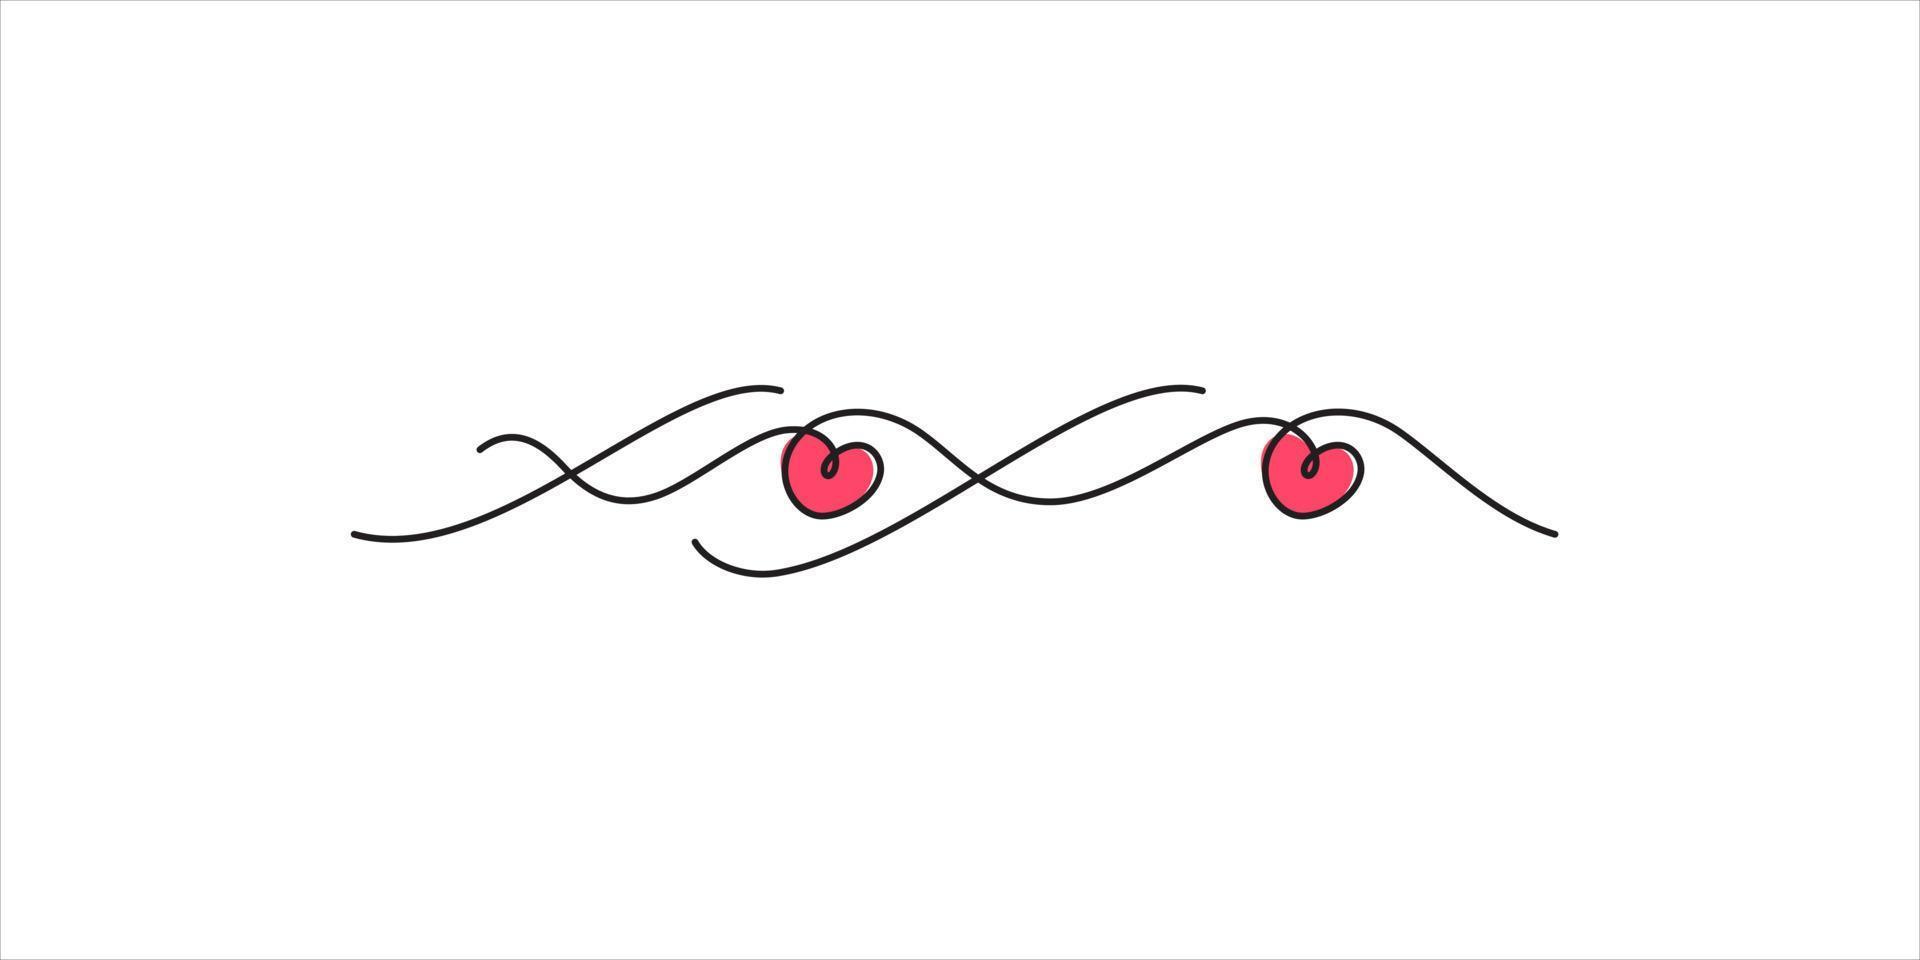 xoxo abraços e beijos design de letras ilustração em vetor arte de linha